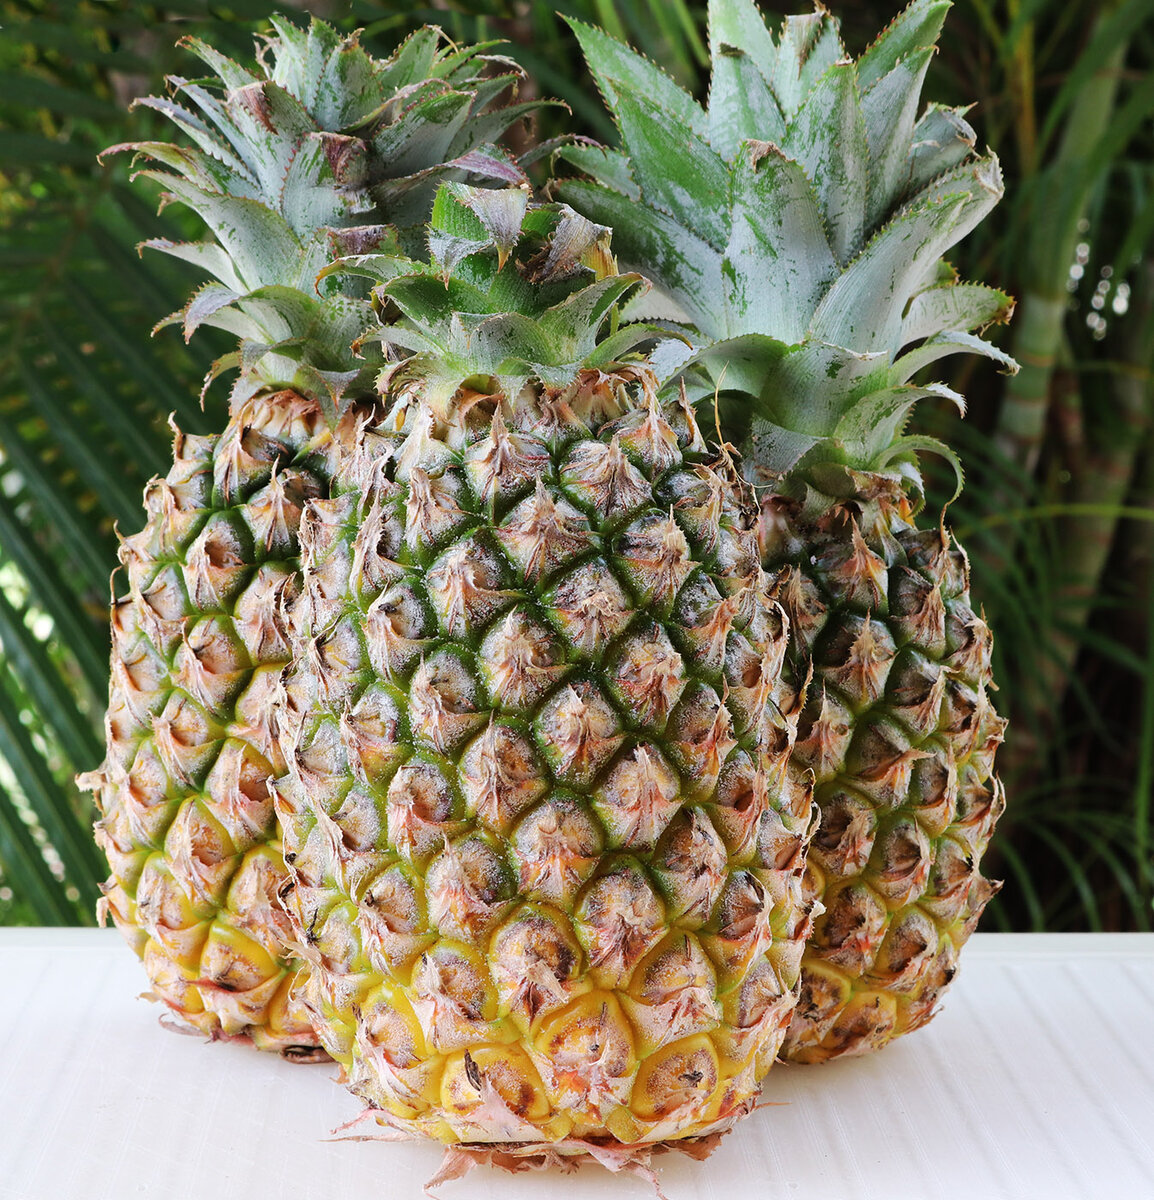 Pineapple s.jpg